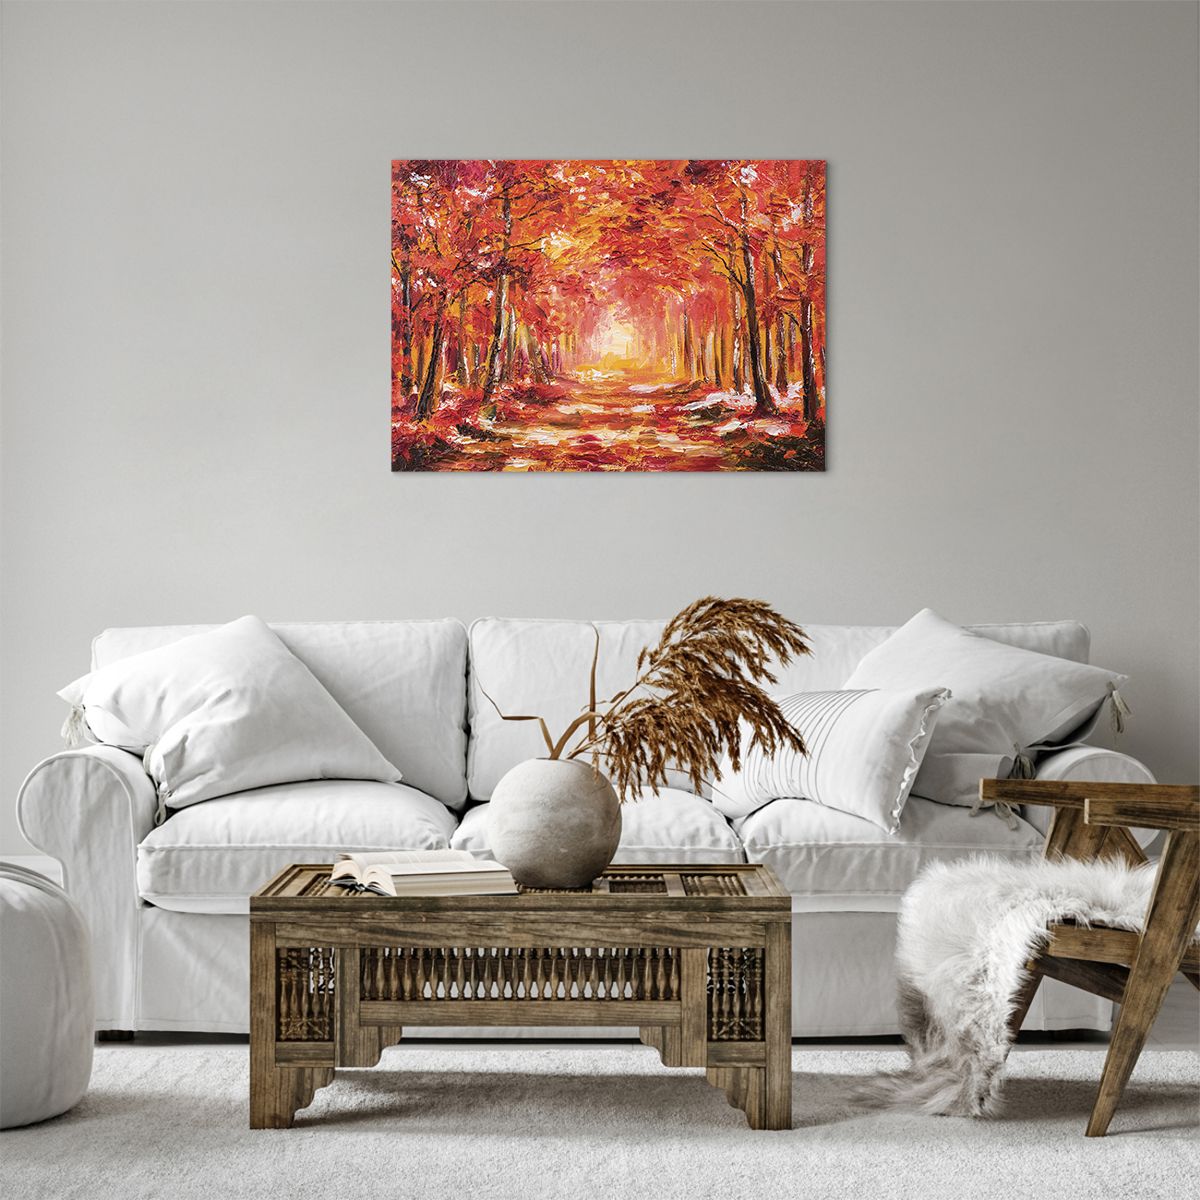 Bild auf Leinwand Herbst, Bild auf Leinwand Park, Bild auf Leinwand Landschaft, Bild auf Leinwand Kunst, Bild auf Leinwand Malerei